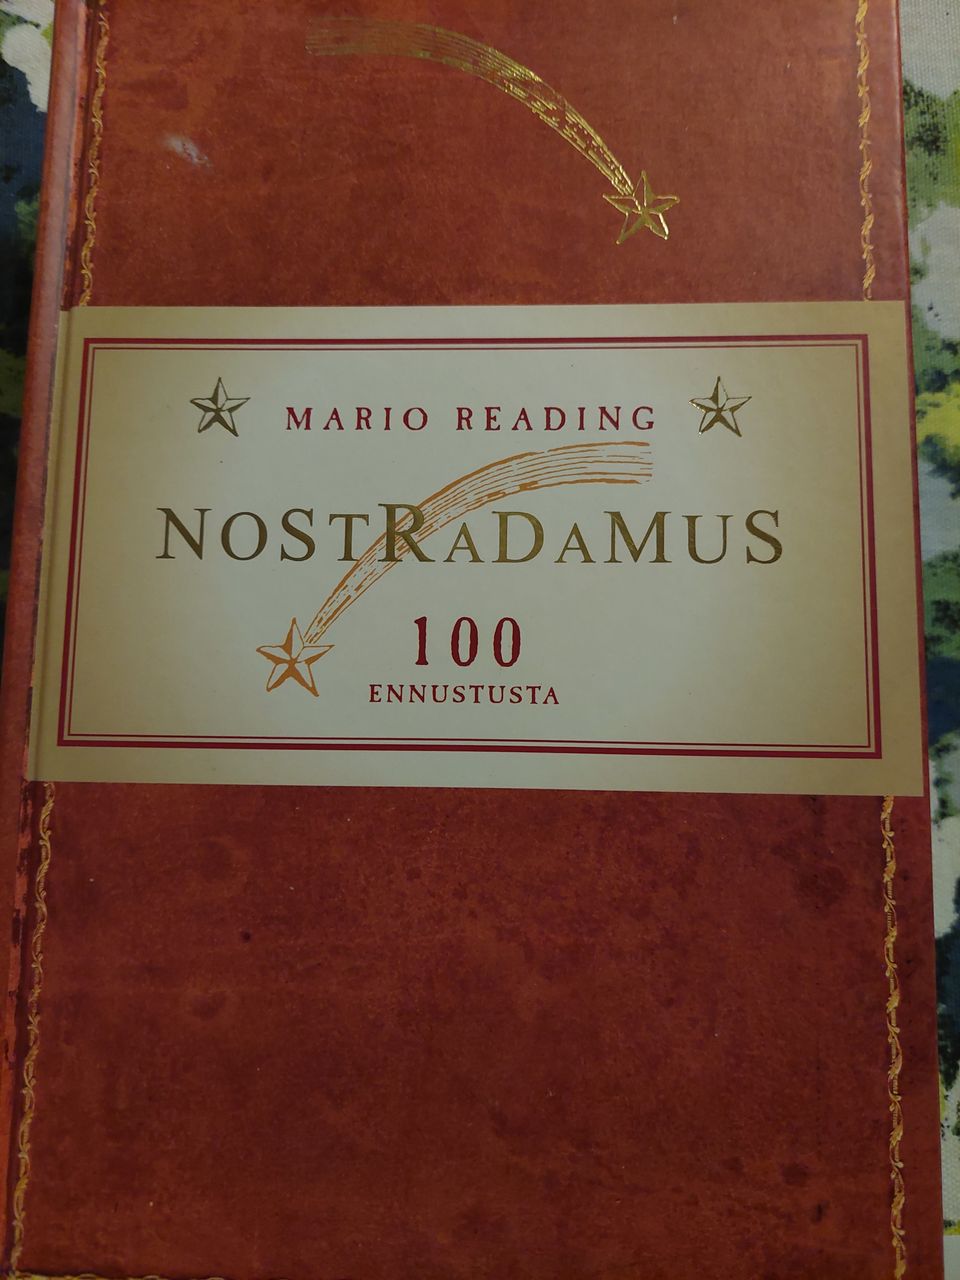 Nostradamus 100 ennustusta